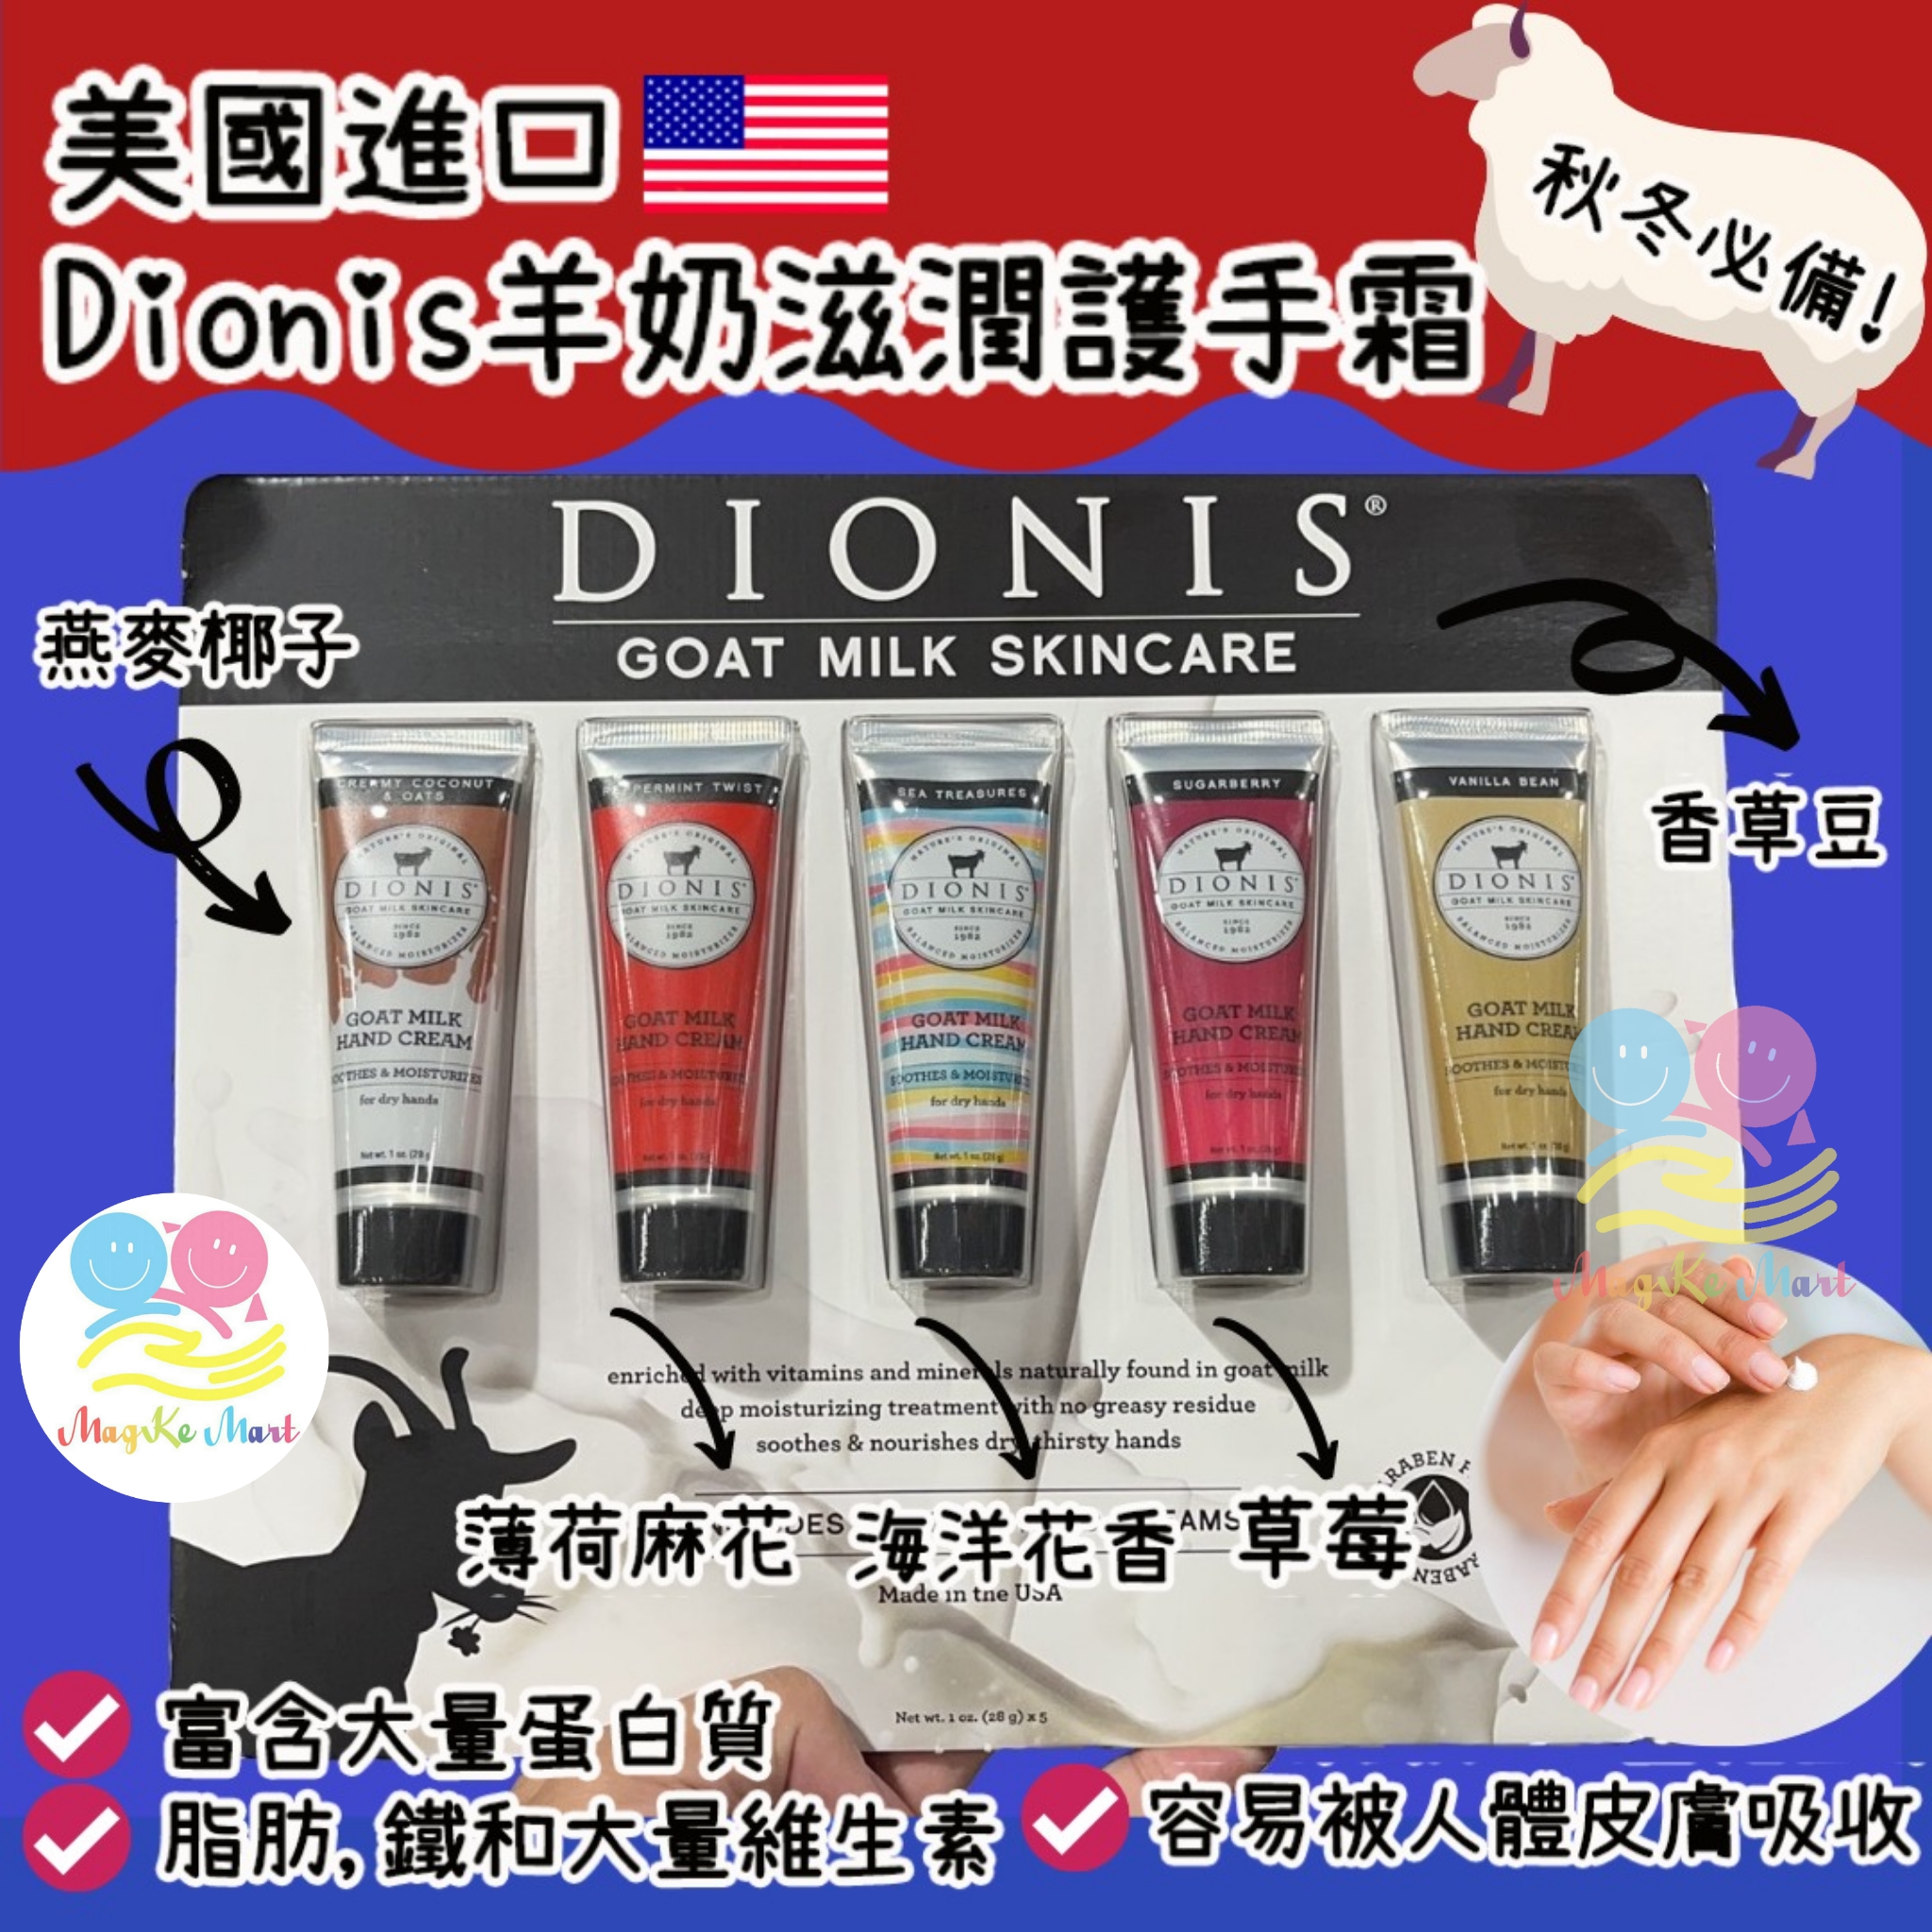 美國 Dionis 羊奶滋潤護手霜 (1套5支)